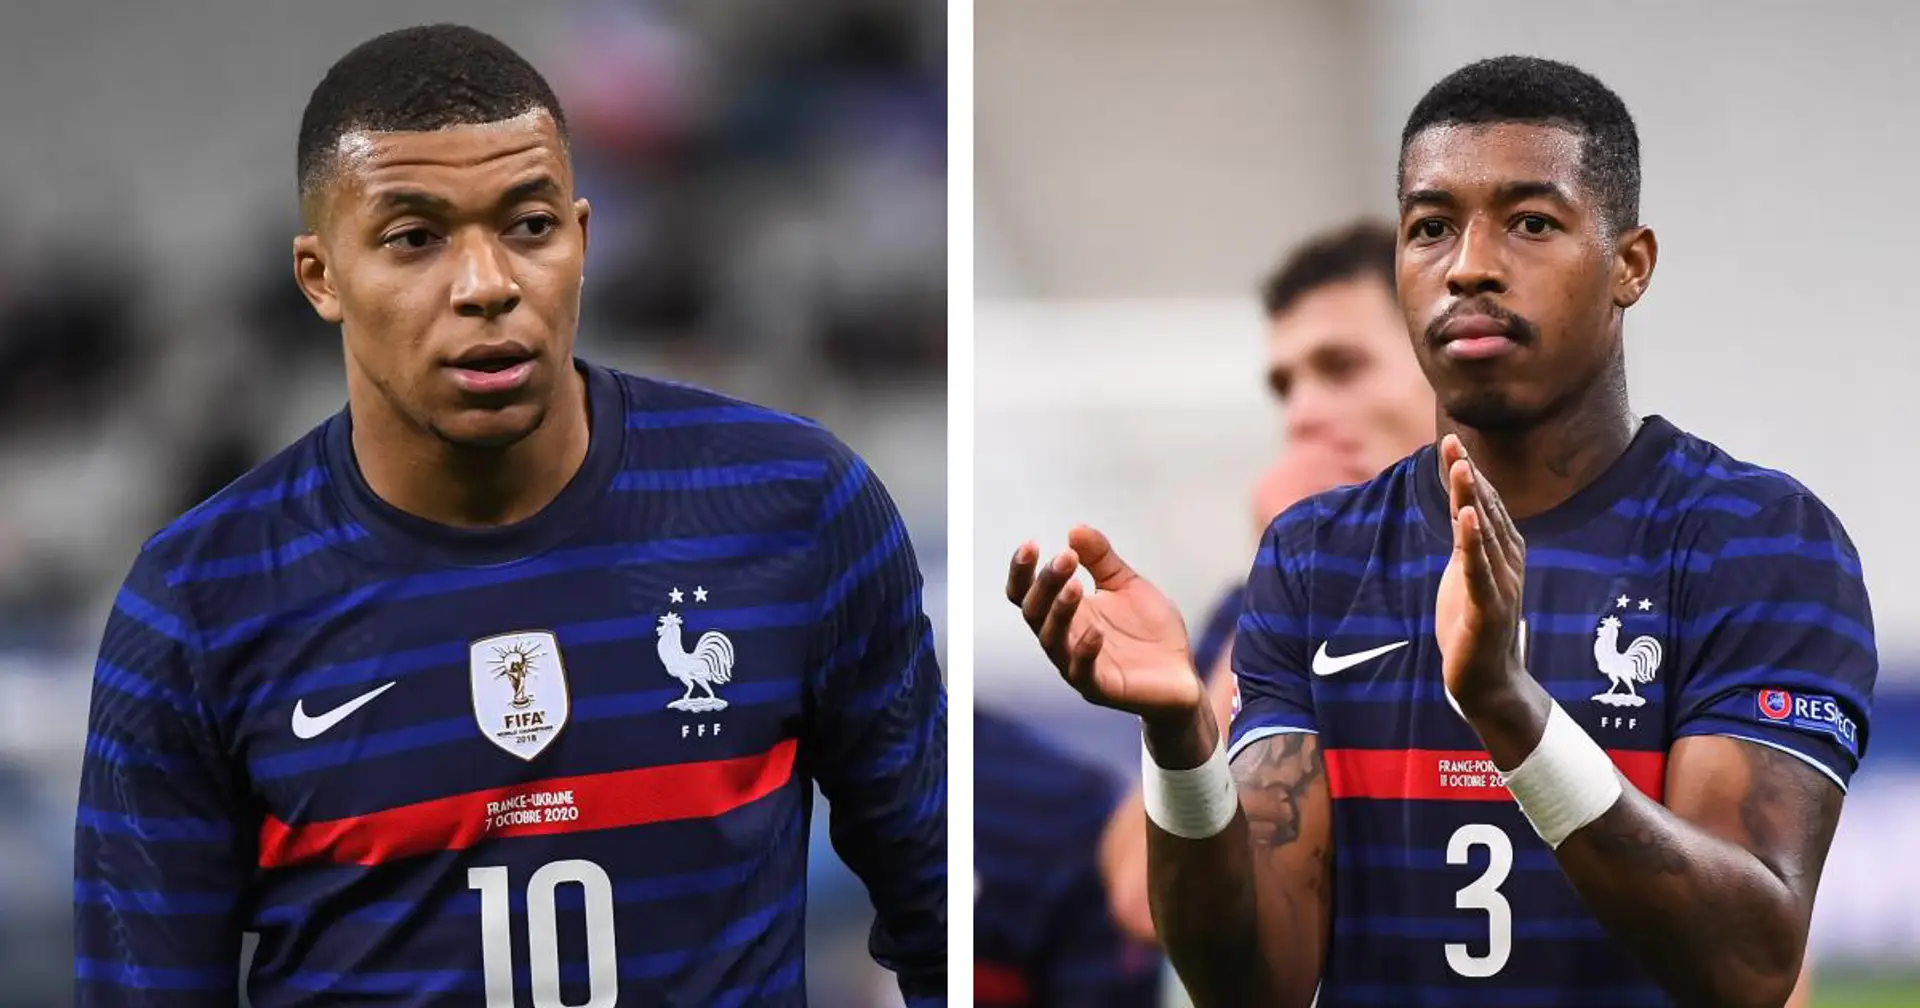 L'équipe de France remporte leur premier match à l'Euro 2020 contre l'Allemagne - Mbappé et Kimpembe ont joué un rôle important dans la victoire